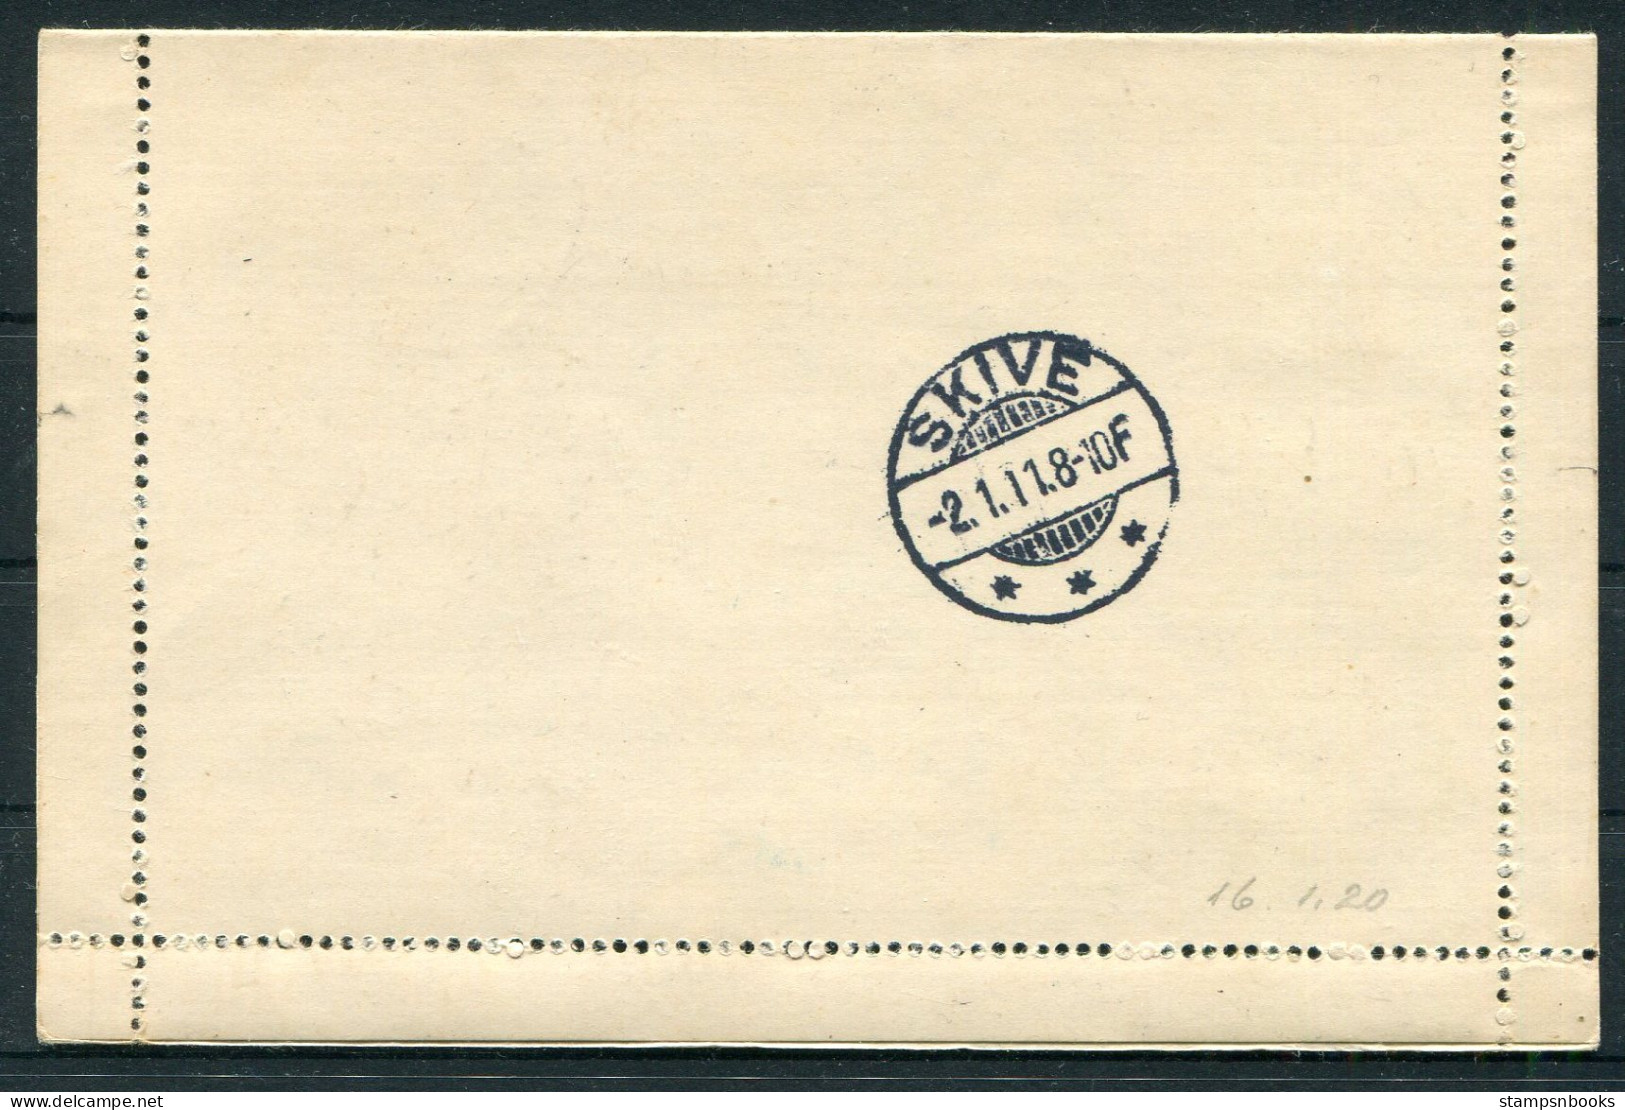 1911 (1.1.11) Denmark 10ore Frederik 8th Stationery Lettercard Hellebaek - Skive - Storia Postale